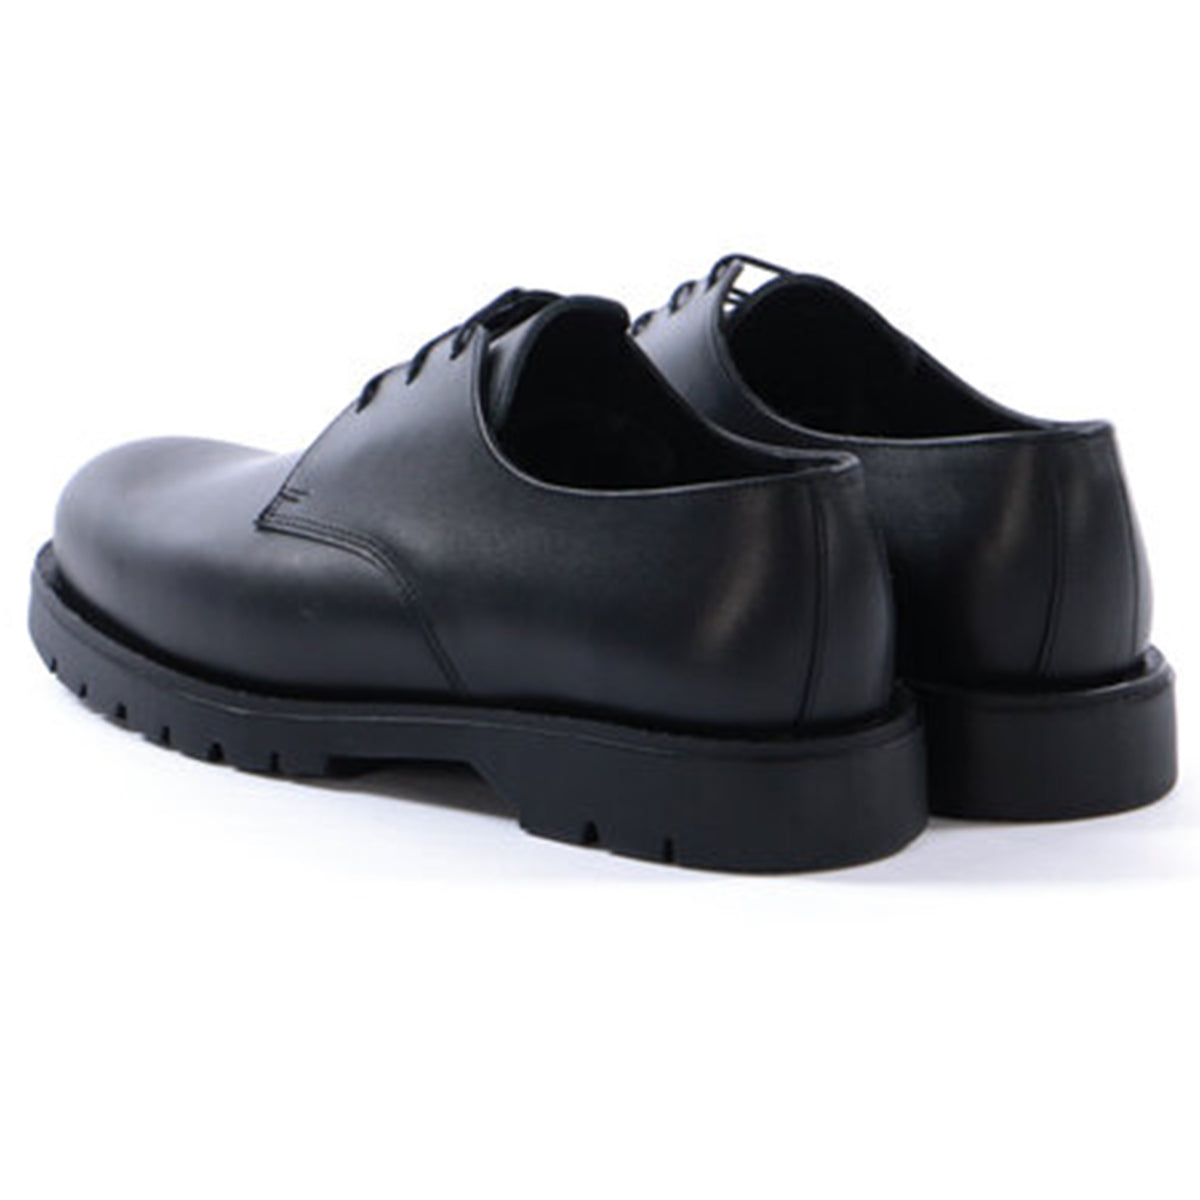 Kleman x Ecole de Pensée Dormance Derby Shoe Collaboration Footwear Black Back Profile